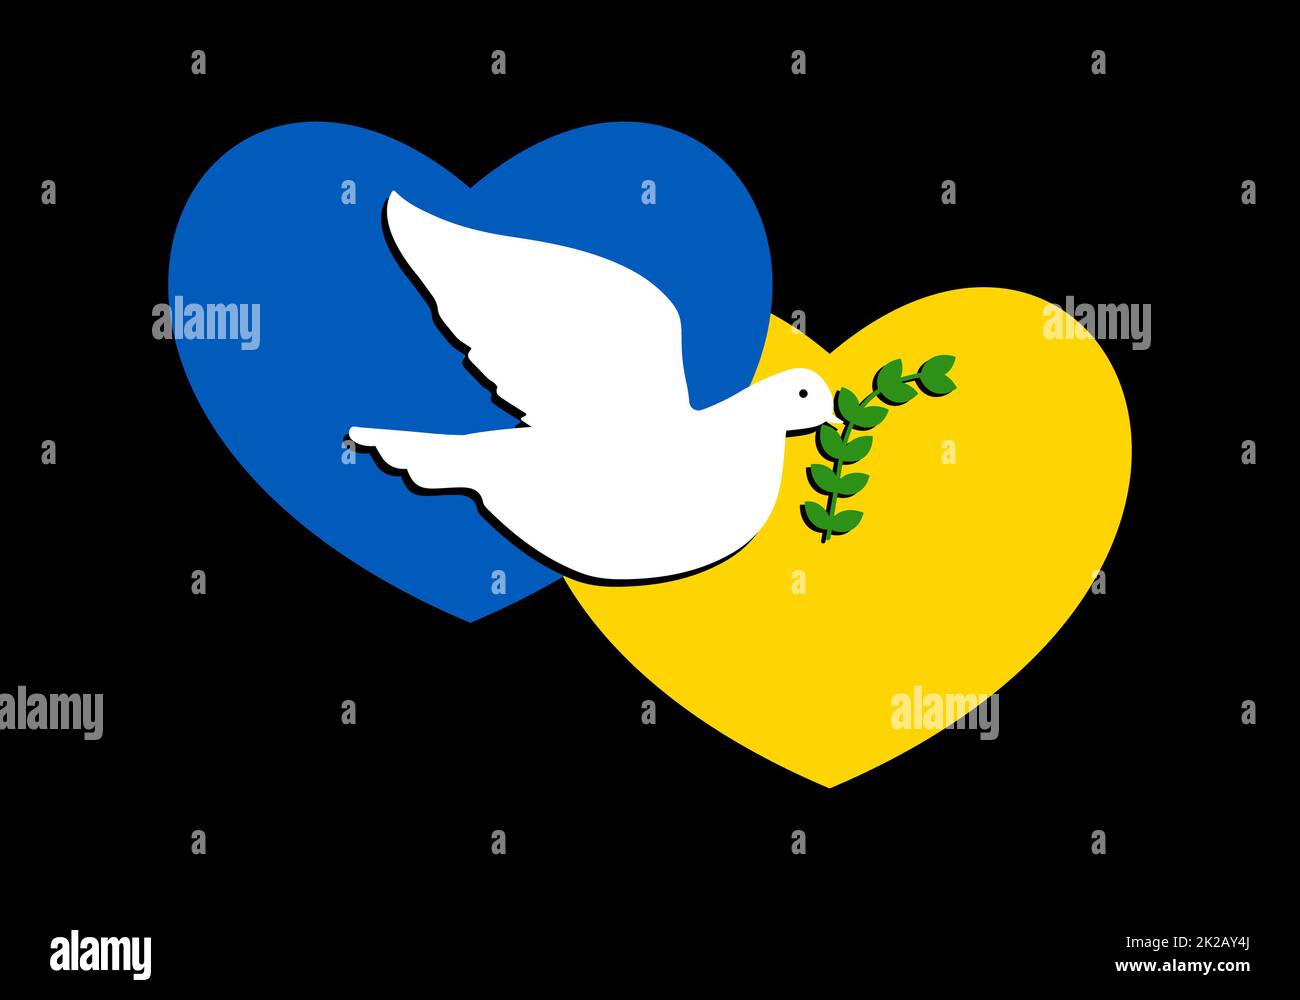 https://c8.alamy.com/compde/2k2ay4j/abstrakte-patriotische-ukrainische-flagge-in-form-eines-zwei-herzen-mit-der-taube-des-friedens-die-weisse-taube-fliegt-und-halt-einen-olivenzweig-des-friedens-flatternder-vogel-der-der-ukraine-frieden-und-ruhe-bringt-2k2ay4j.jpg